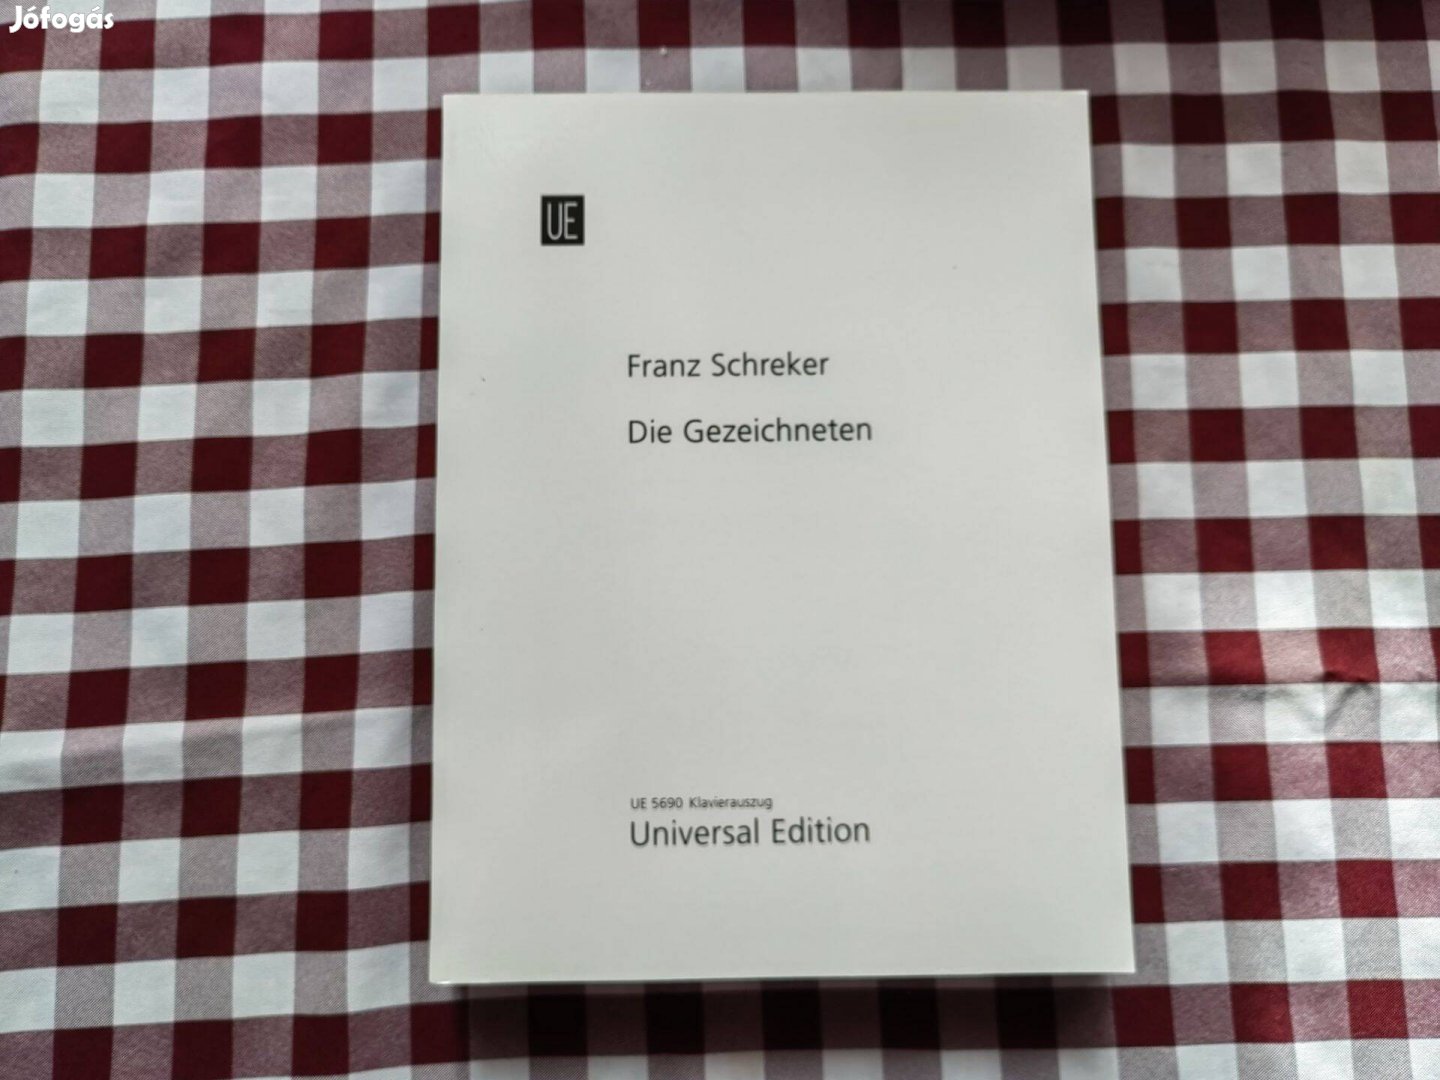 Franz Schreker - die gezeichneten CEU editition